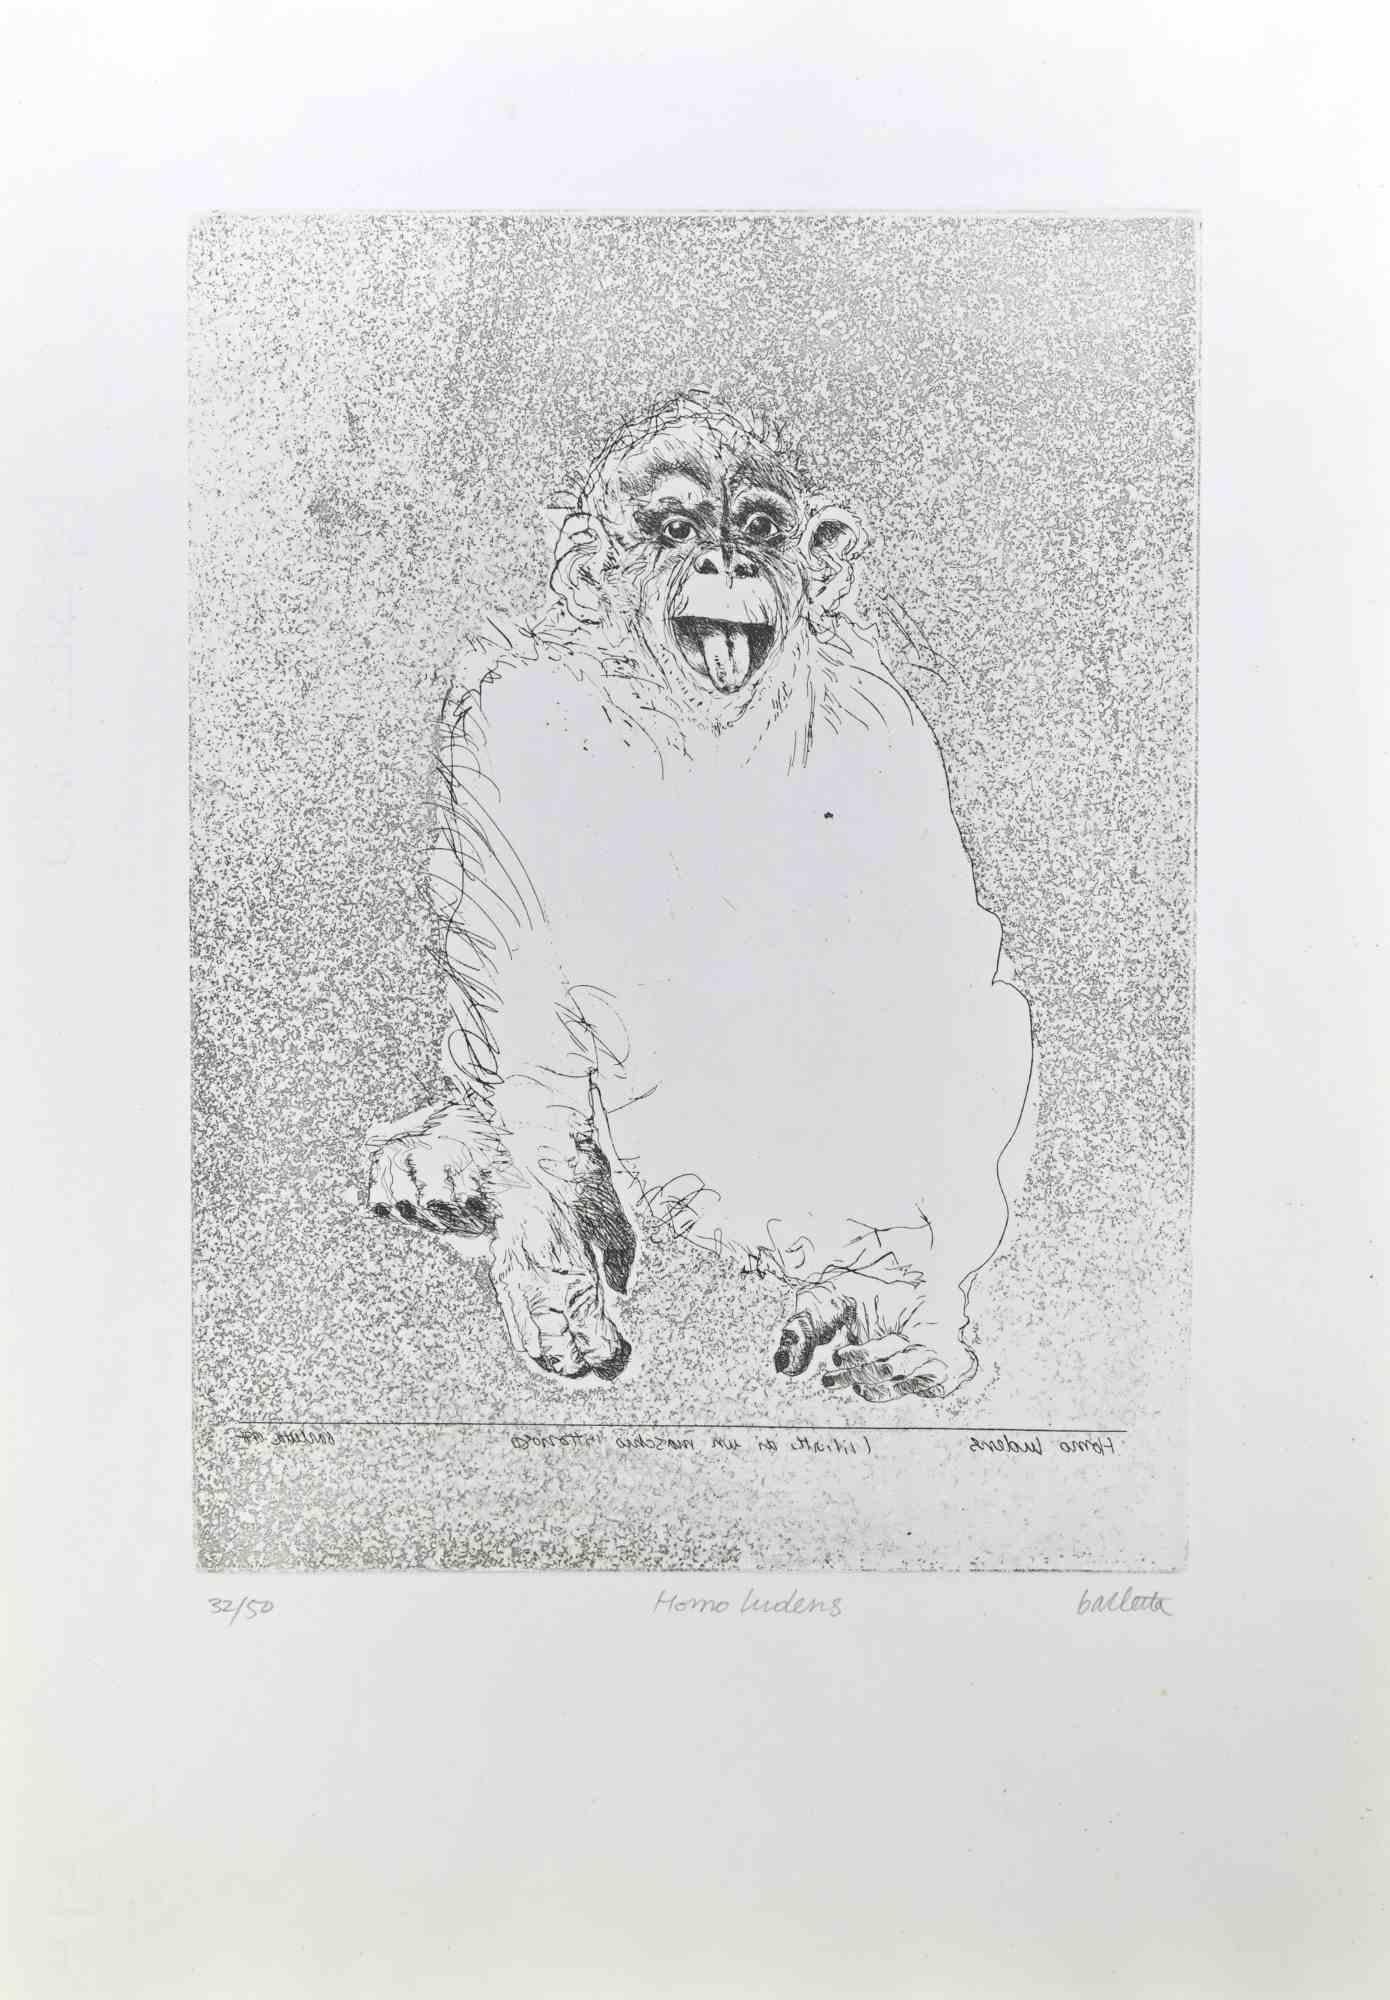 Homo Ludens  ist eine Ätzung, die von  Sergio Barletta im Jahr 1991.

Handsigniert  unten rechts mit Bleistift und unten in der Mitte betitelt "Homo Ludens". Links unten nummeriert, aus einer Auflage von 50 Exemplaren.

Gute Bedingungen.

Sergio